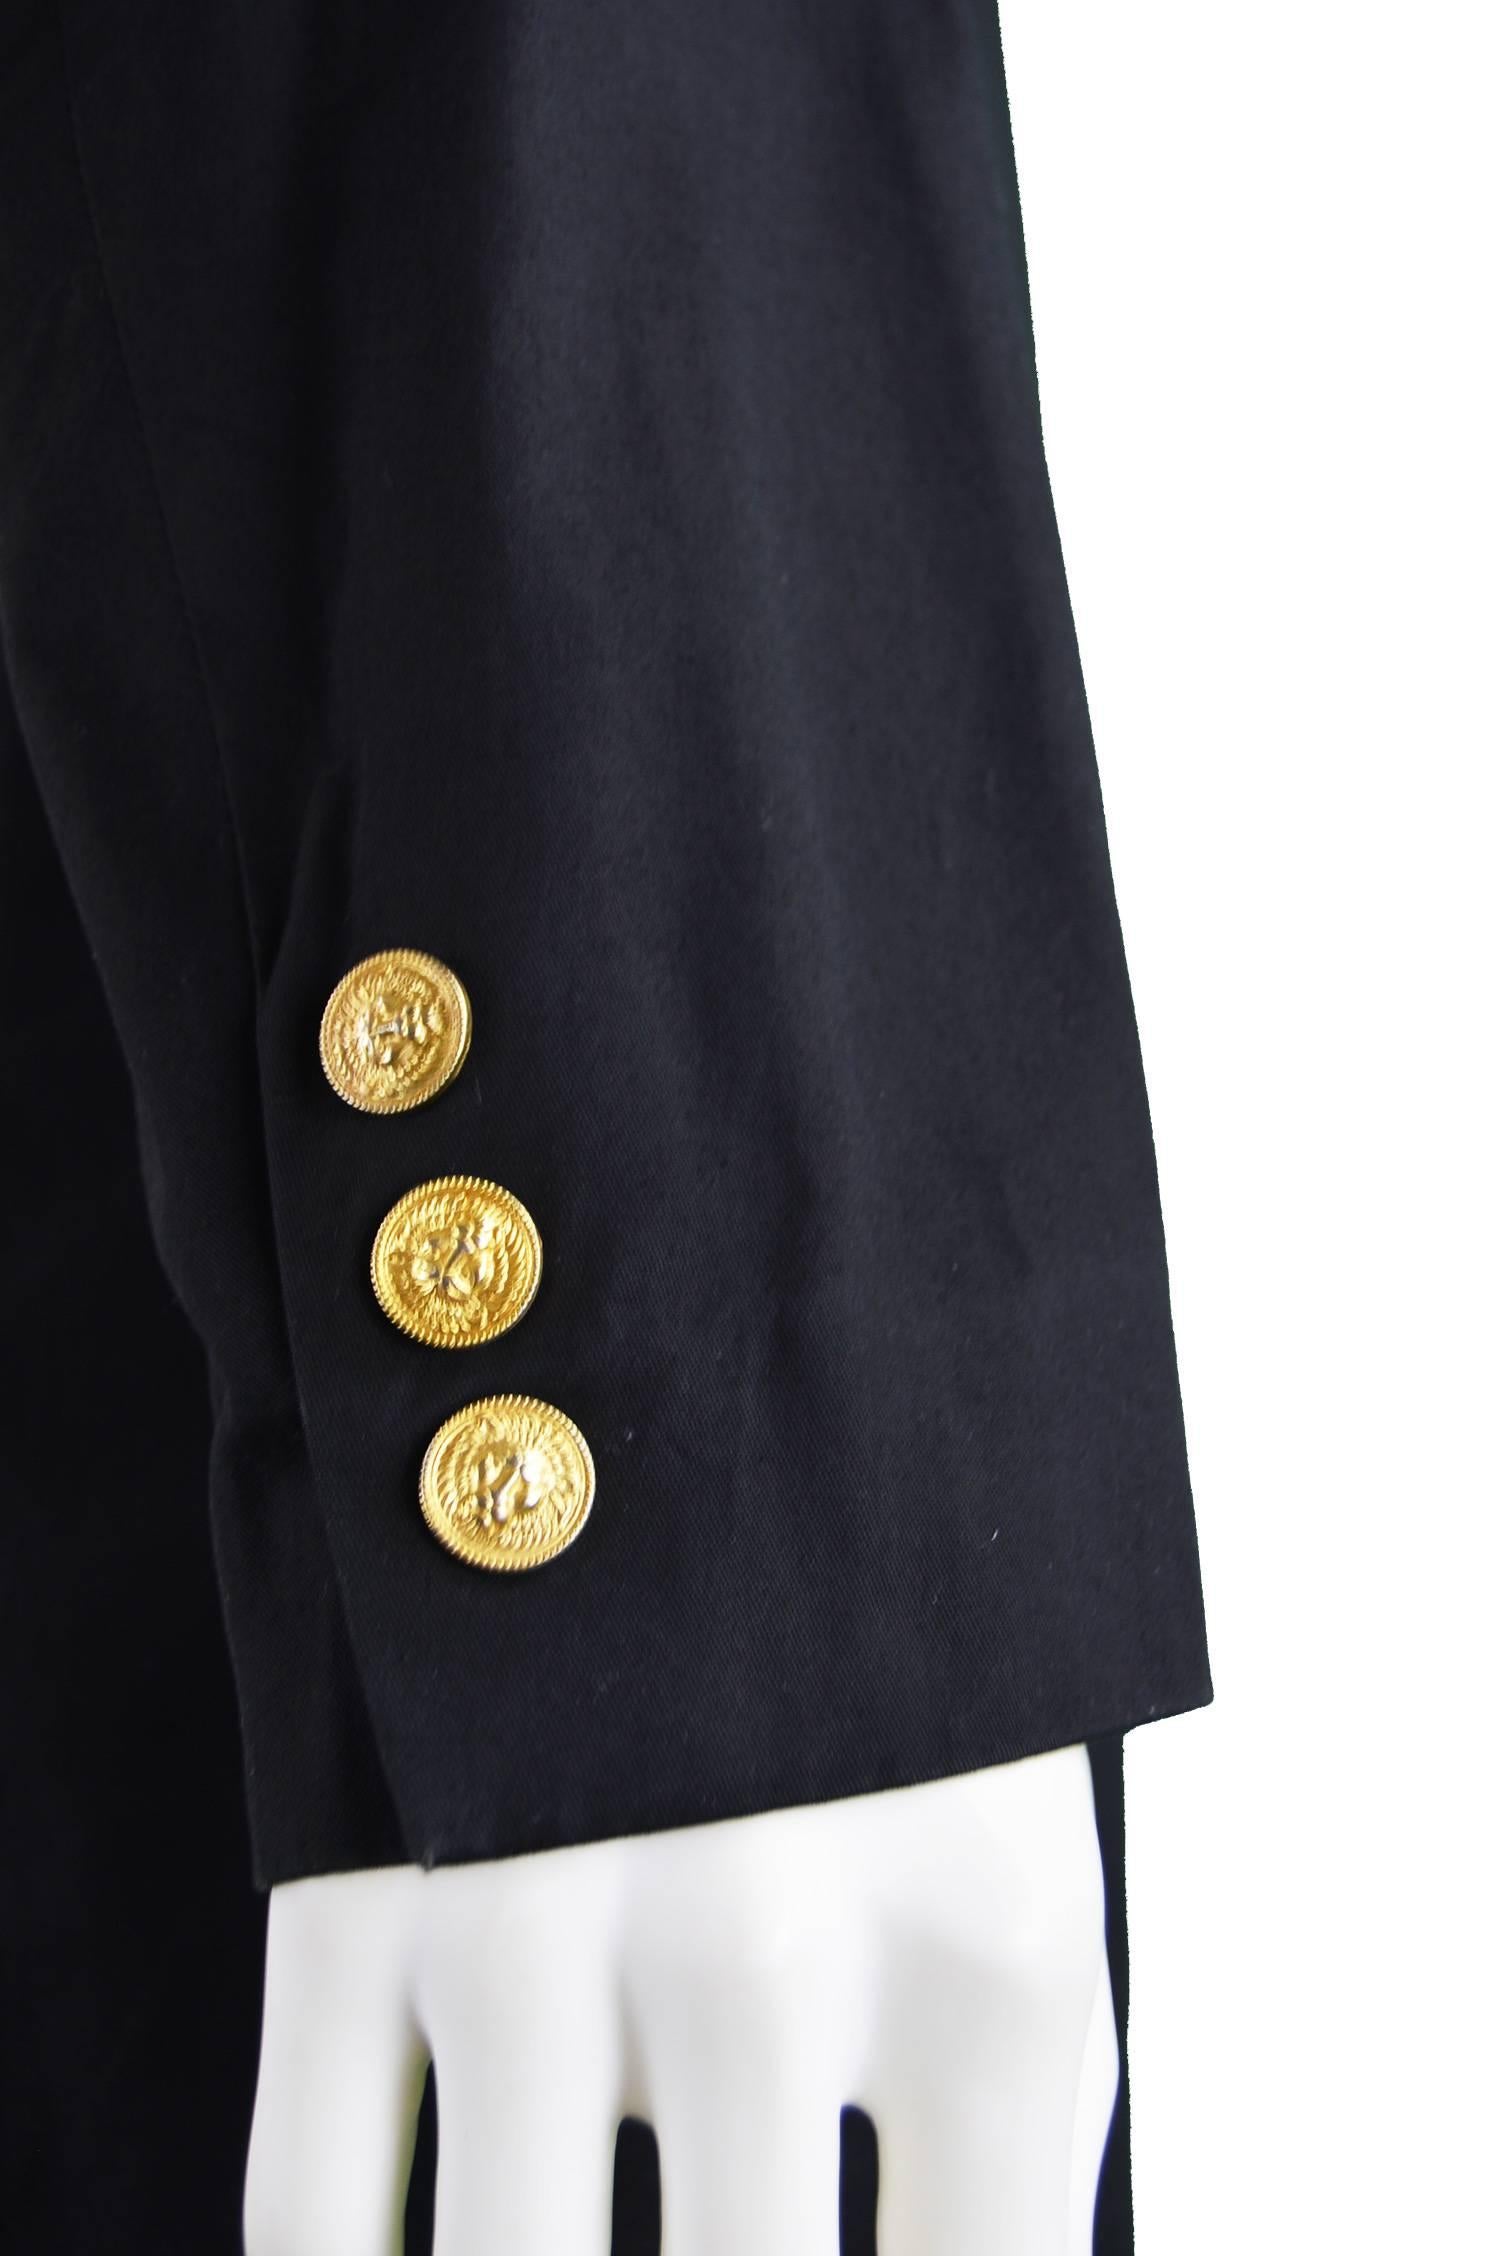 Gianni Versace Versus Vintage 1990's Men's Rare S & M Black & Gold Cotton Blazer For Sale 5